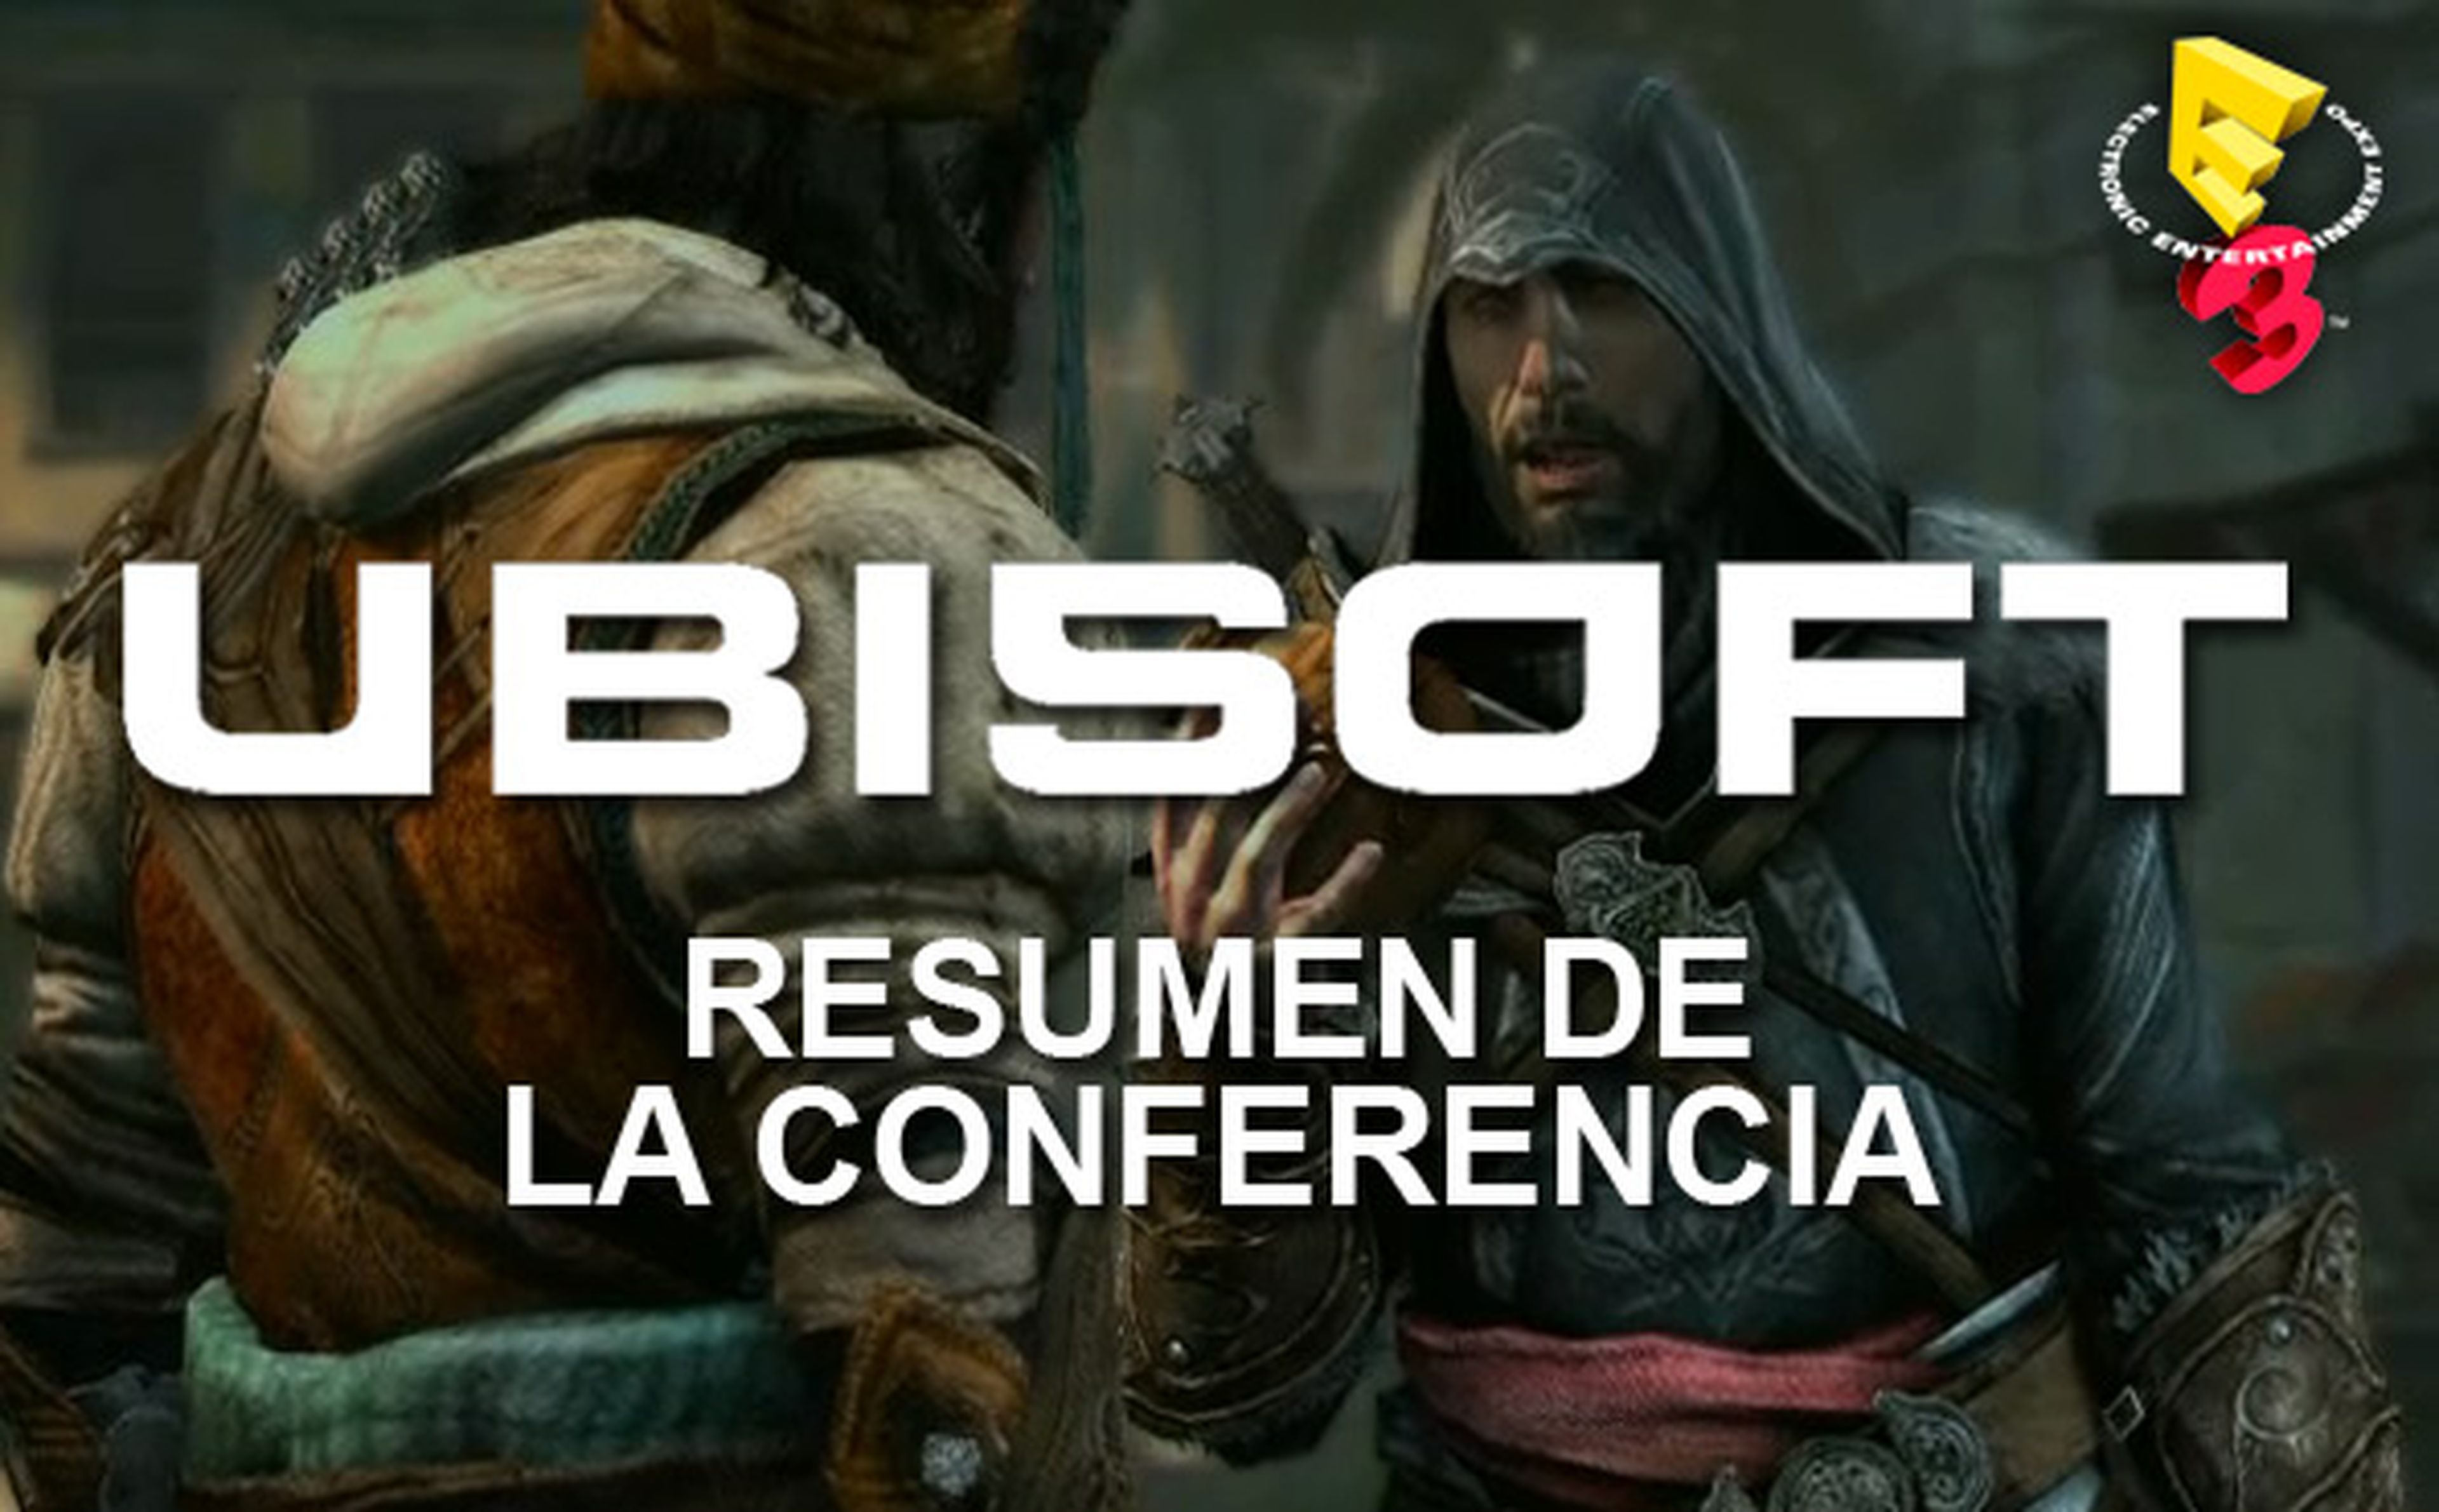 Conferencia de Ubisoft en resumen